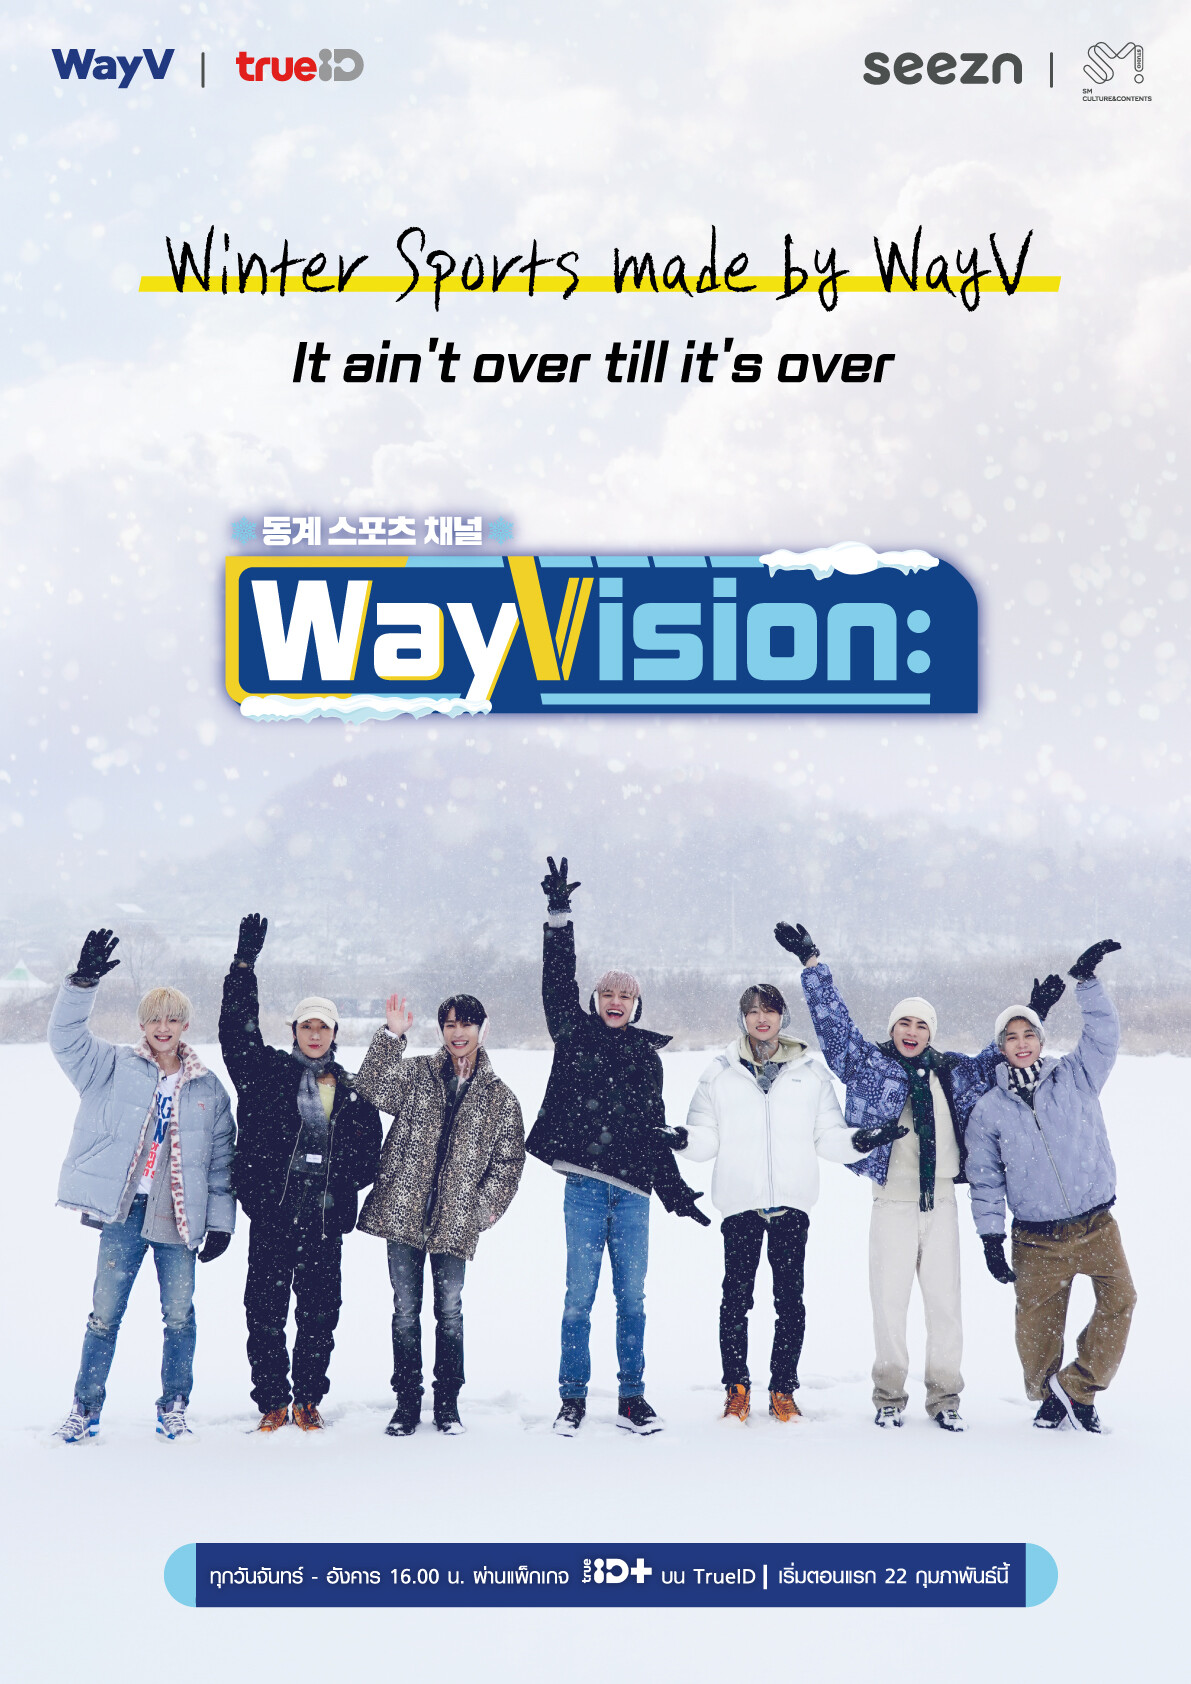 ทรูไอดี เอาใจสาวกเกาหลี ส่งตรงความสนุกครั้งใหม่ ของหนุ่มๆ วง WayV กับรายการเรียลลิตี้ "WayVision Season2" ชมสดพร้อมเกาหลี มีซับไทย ได้แล้ววันนี้ ที่ทรูไอดี!